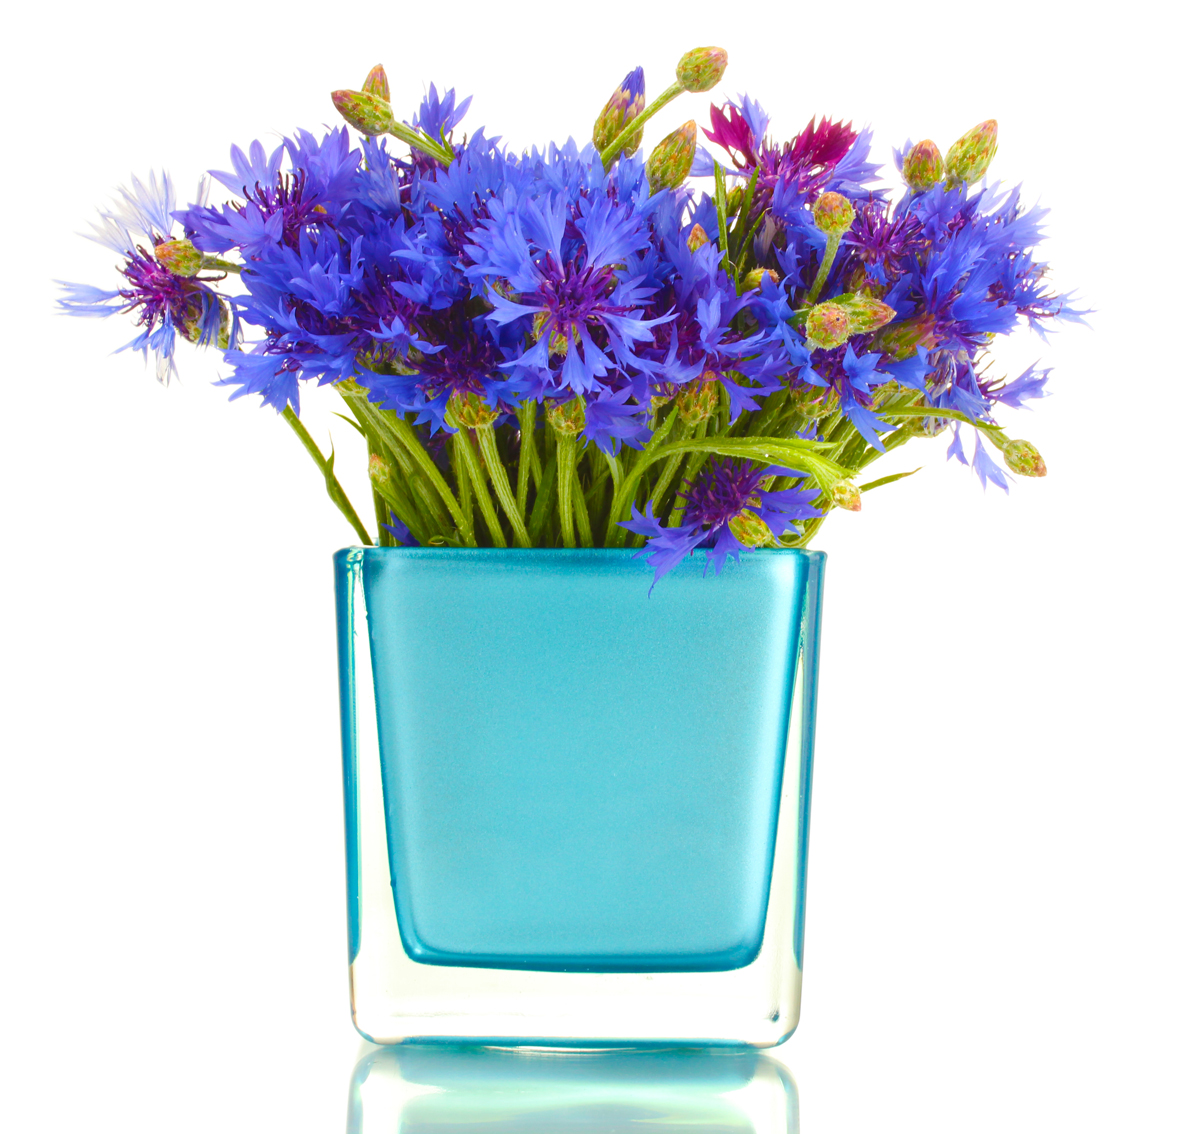 Koupit si můžete i jednobarevnou vázu výrazného odstínu, pokud budete myslet na to, jaké barvy jsou vaše oblíbené květiny, aby výsledek lahodil oku.